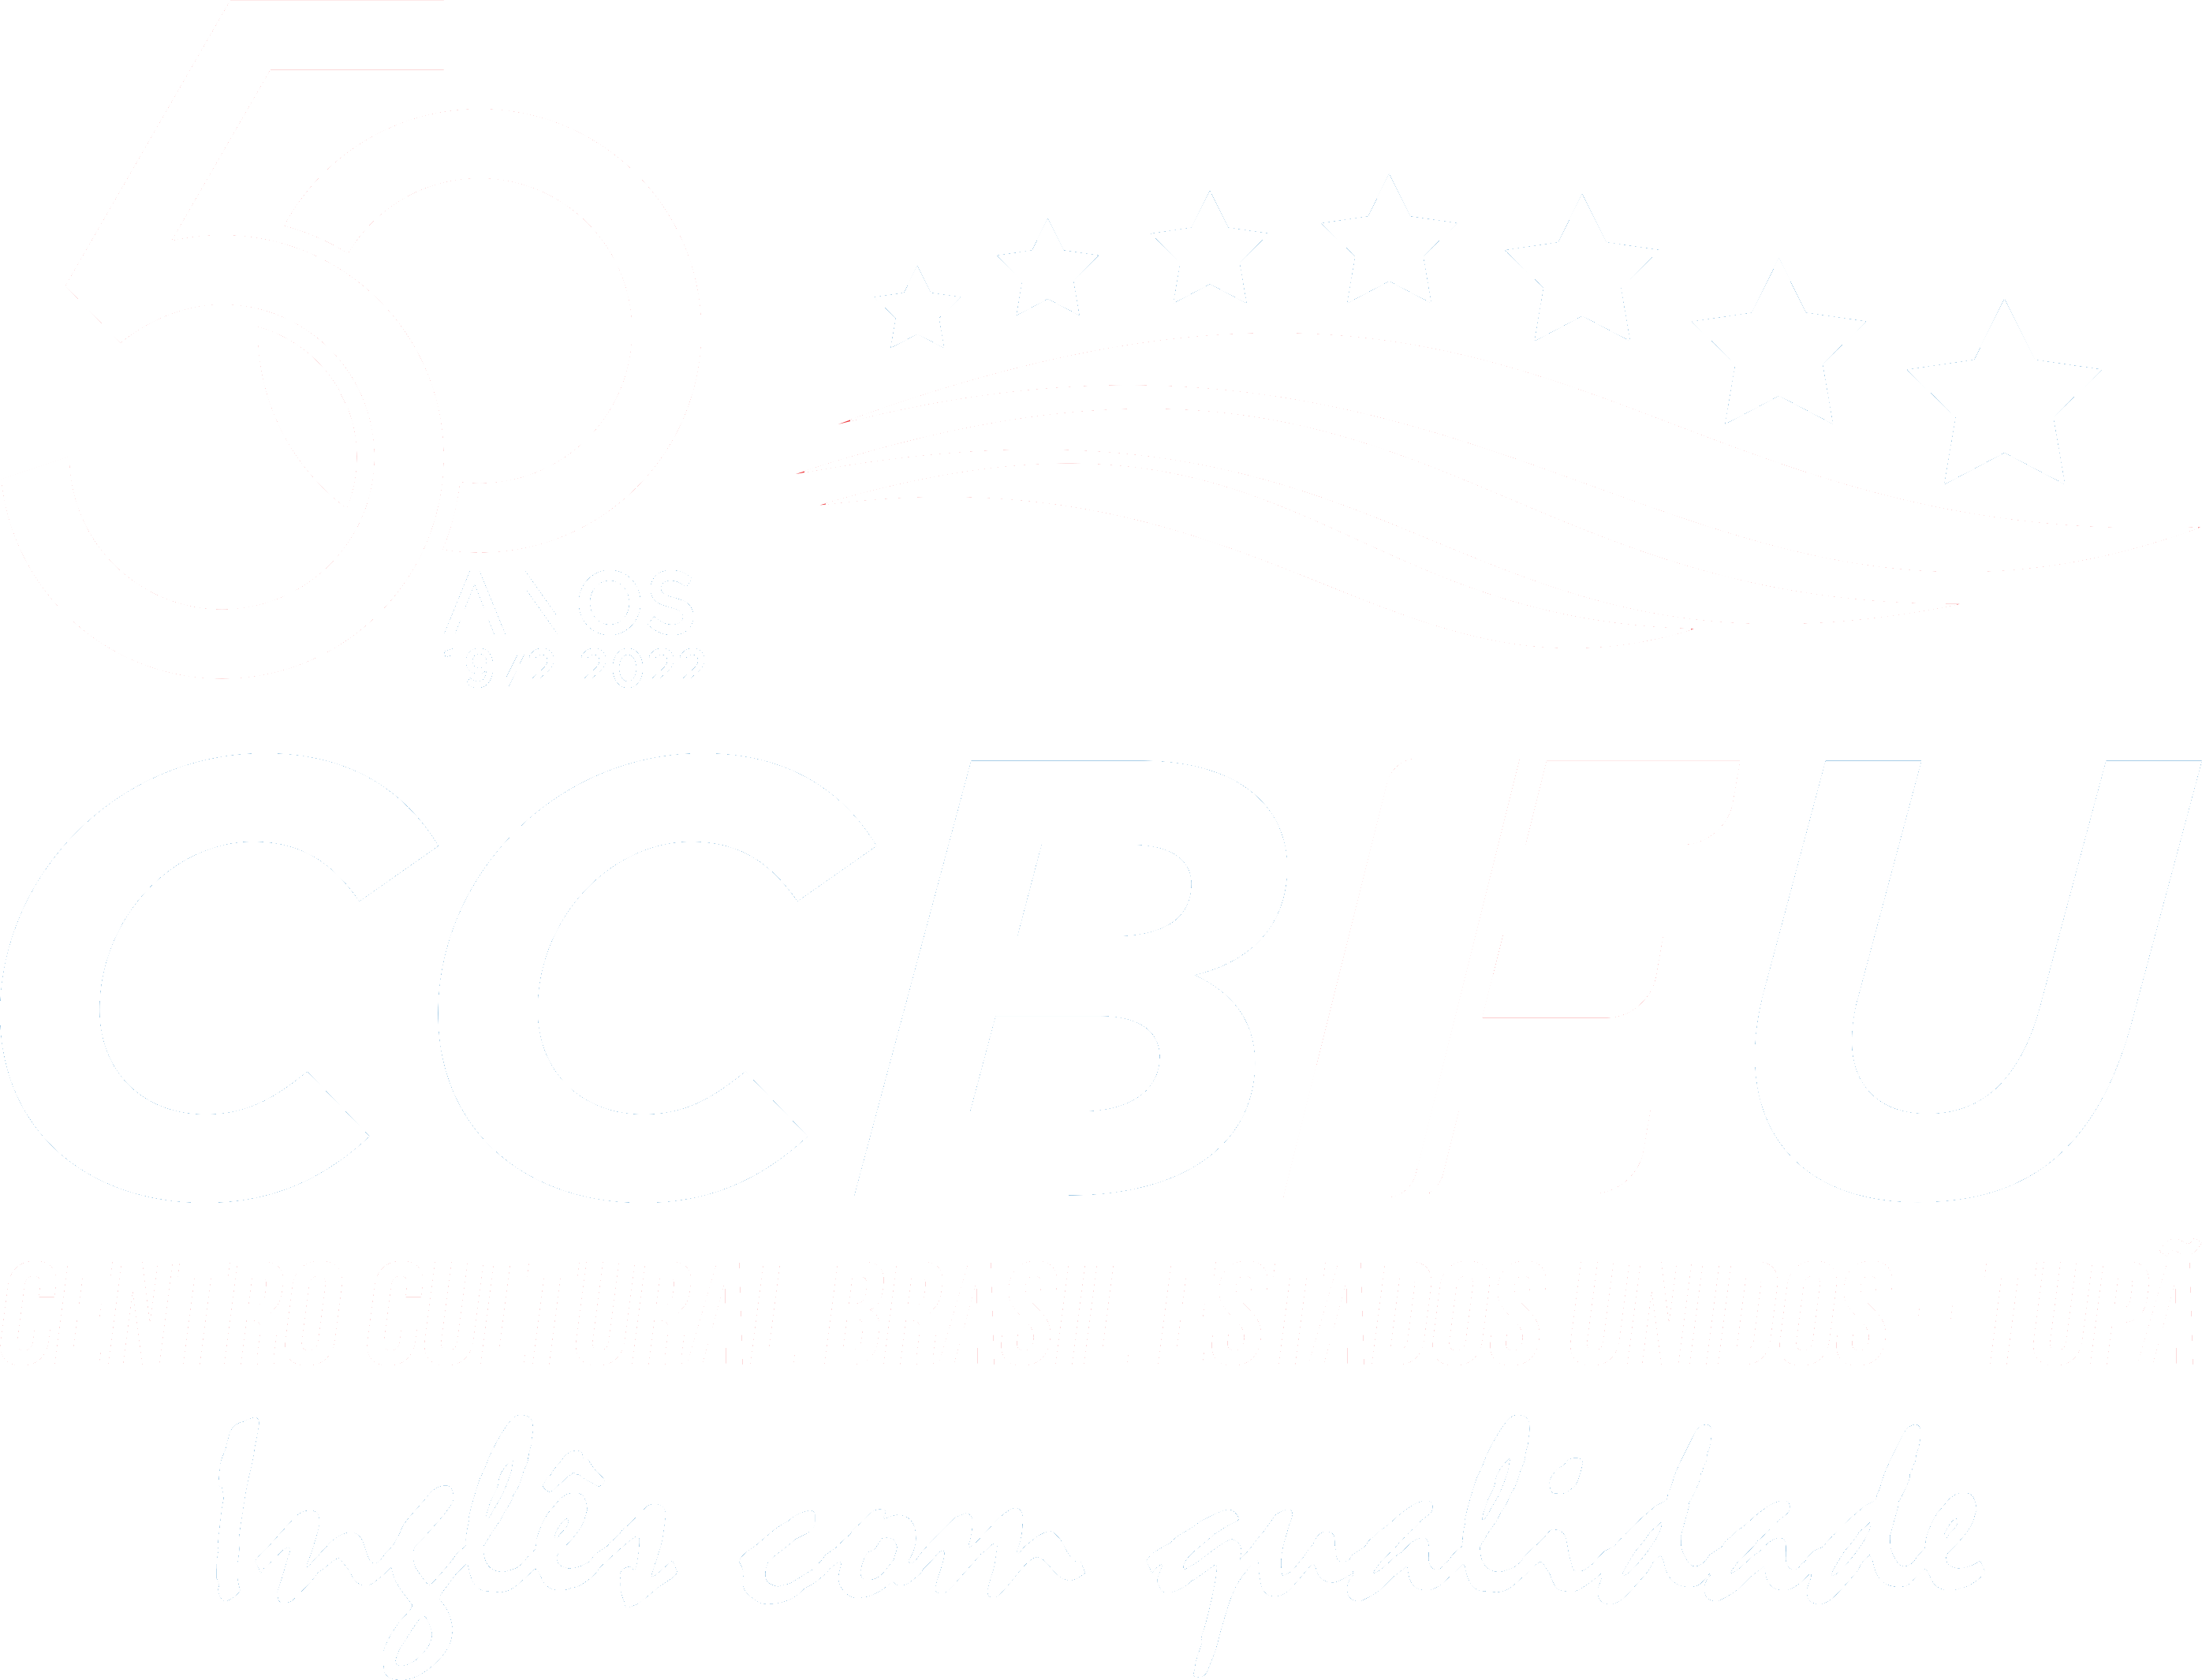 Centro Cultural Brasil Estados Unidos